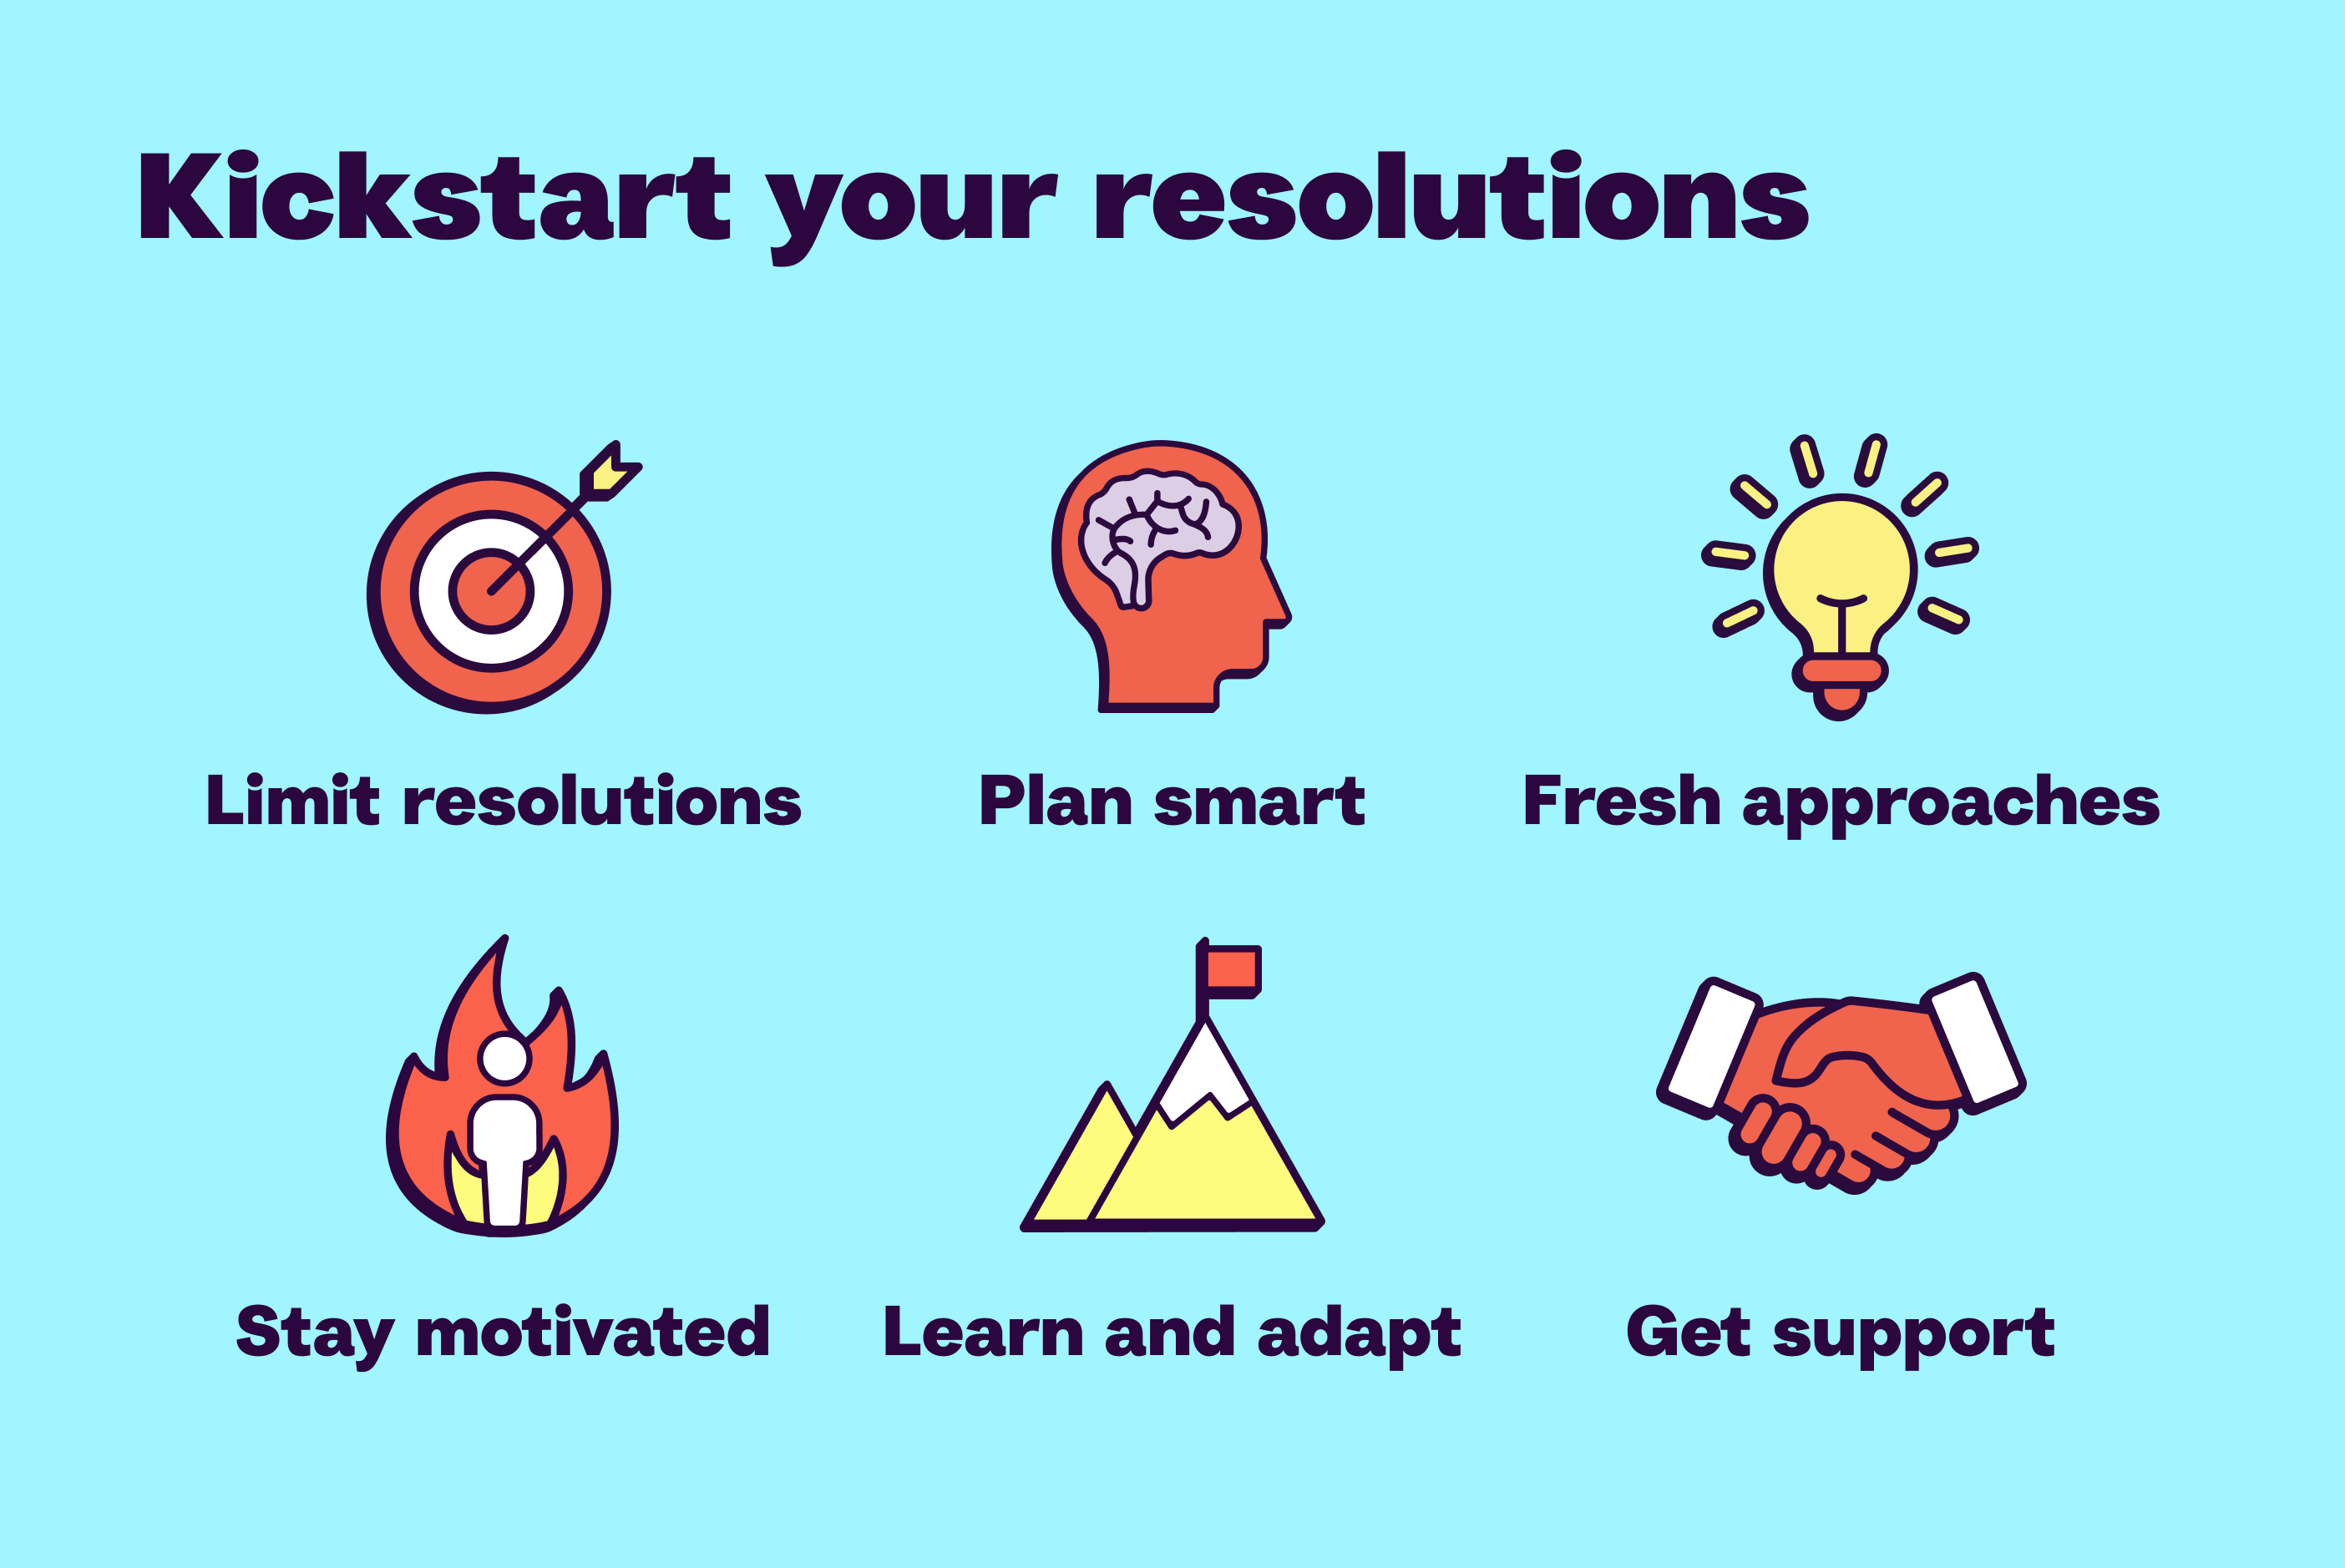 Kickstart resolution tip image for newsletter